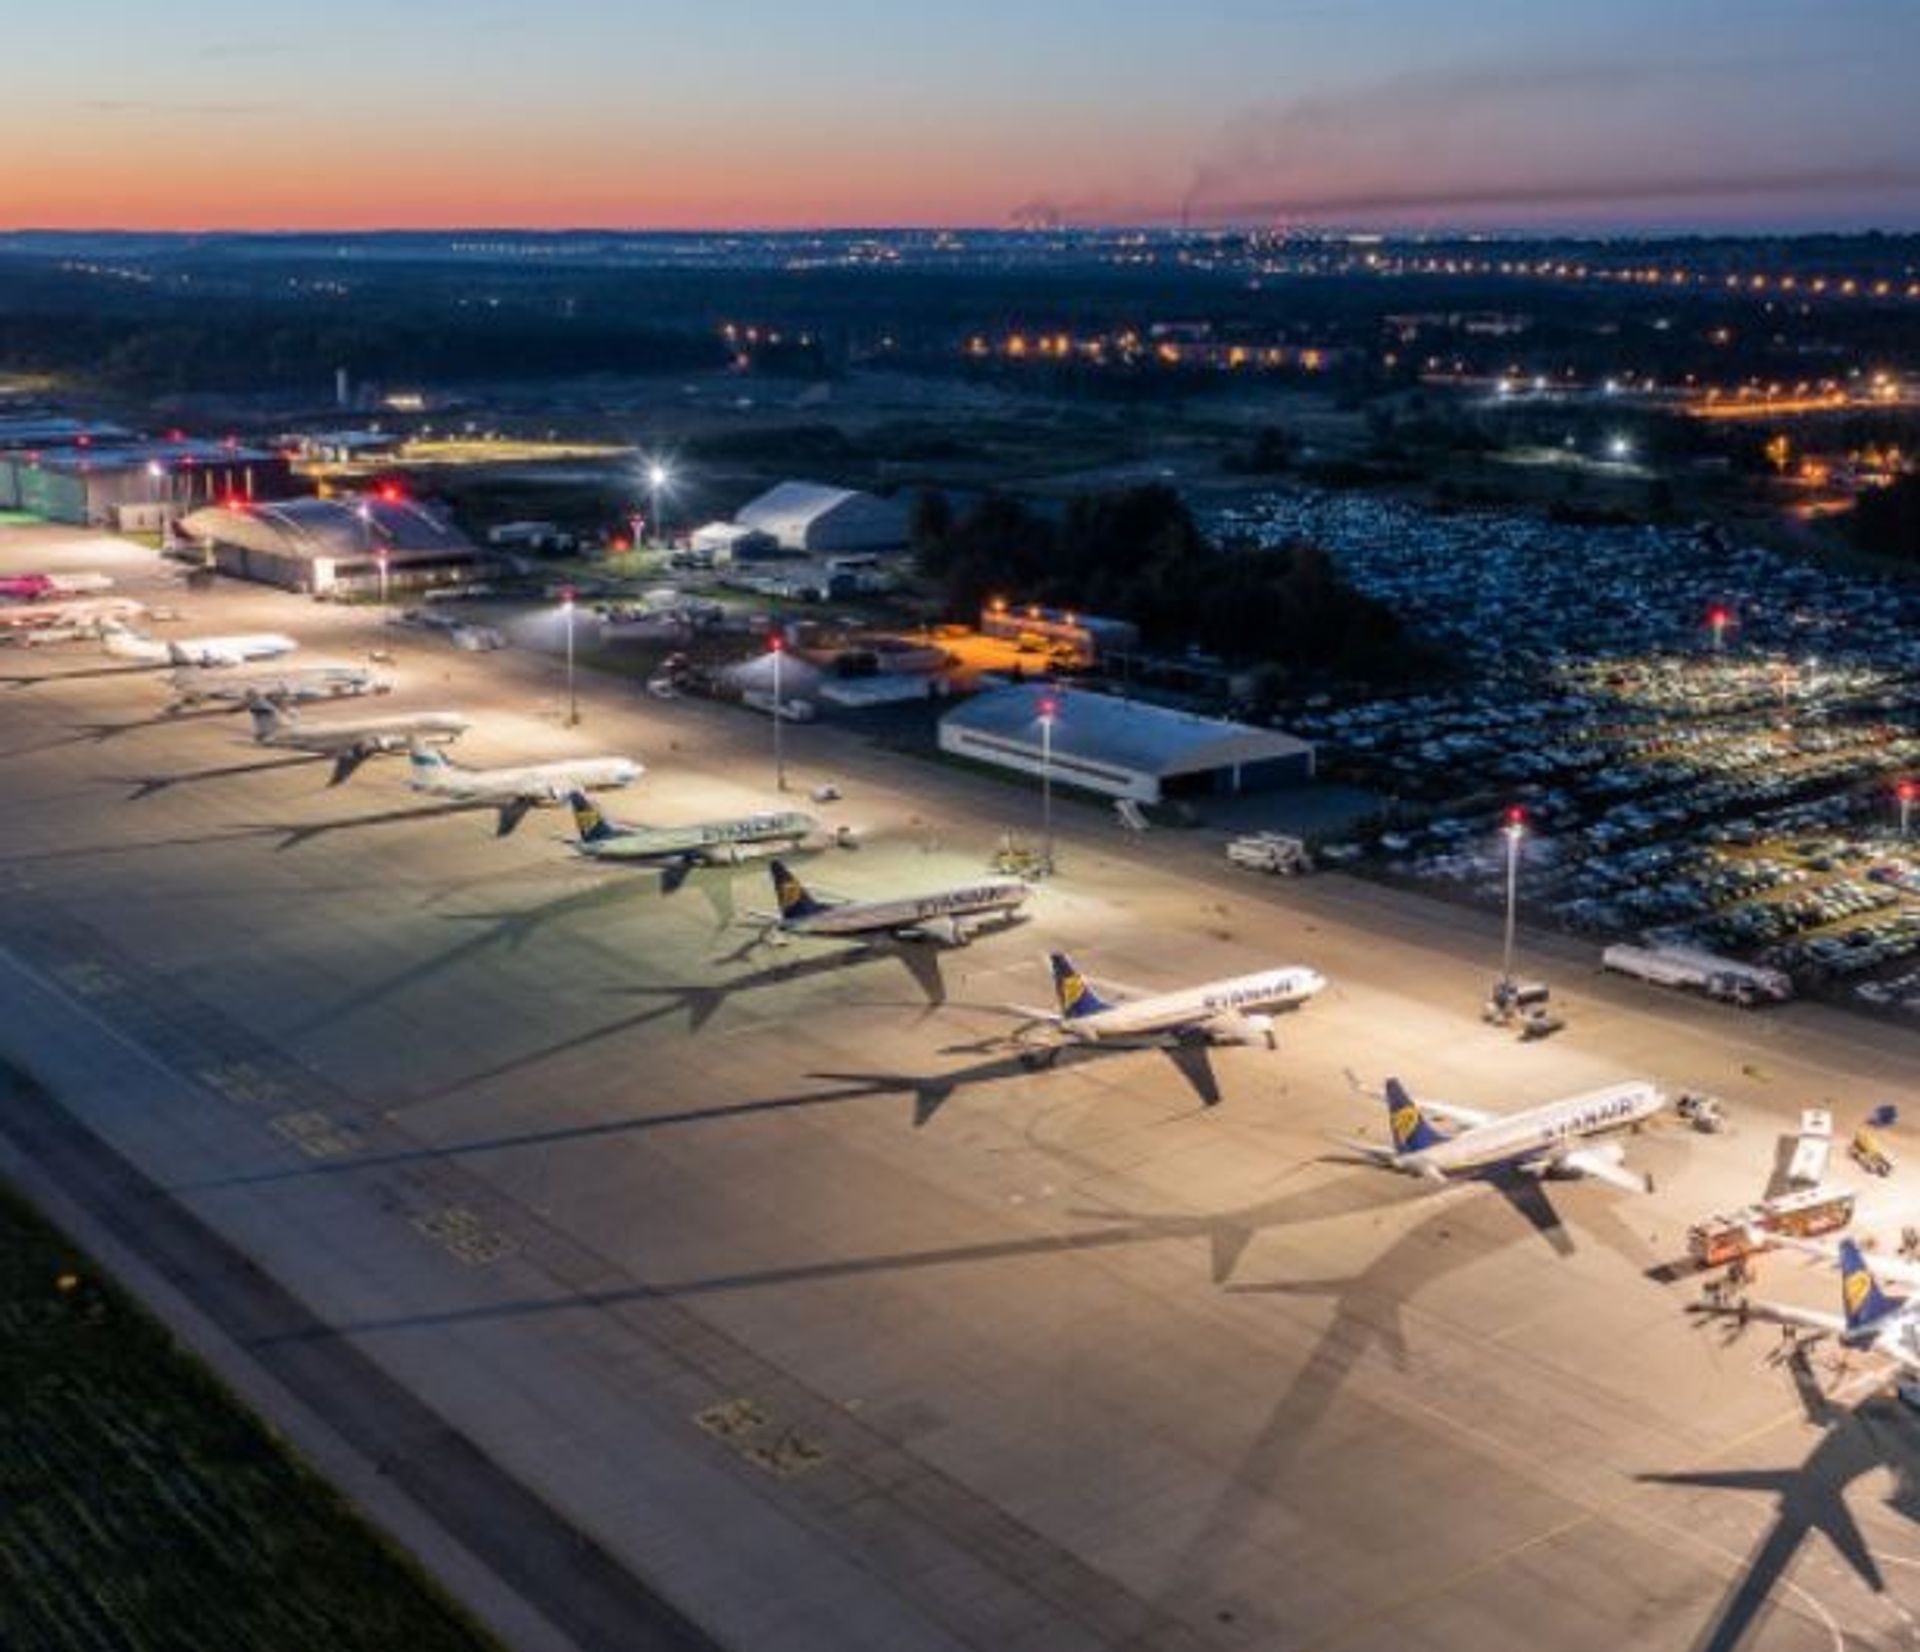 Port lotniczy Katowice-Pyrzowice z kolejnym rekordem przewozów cargo